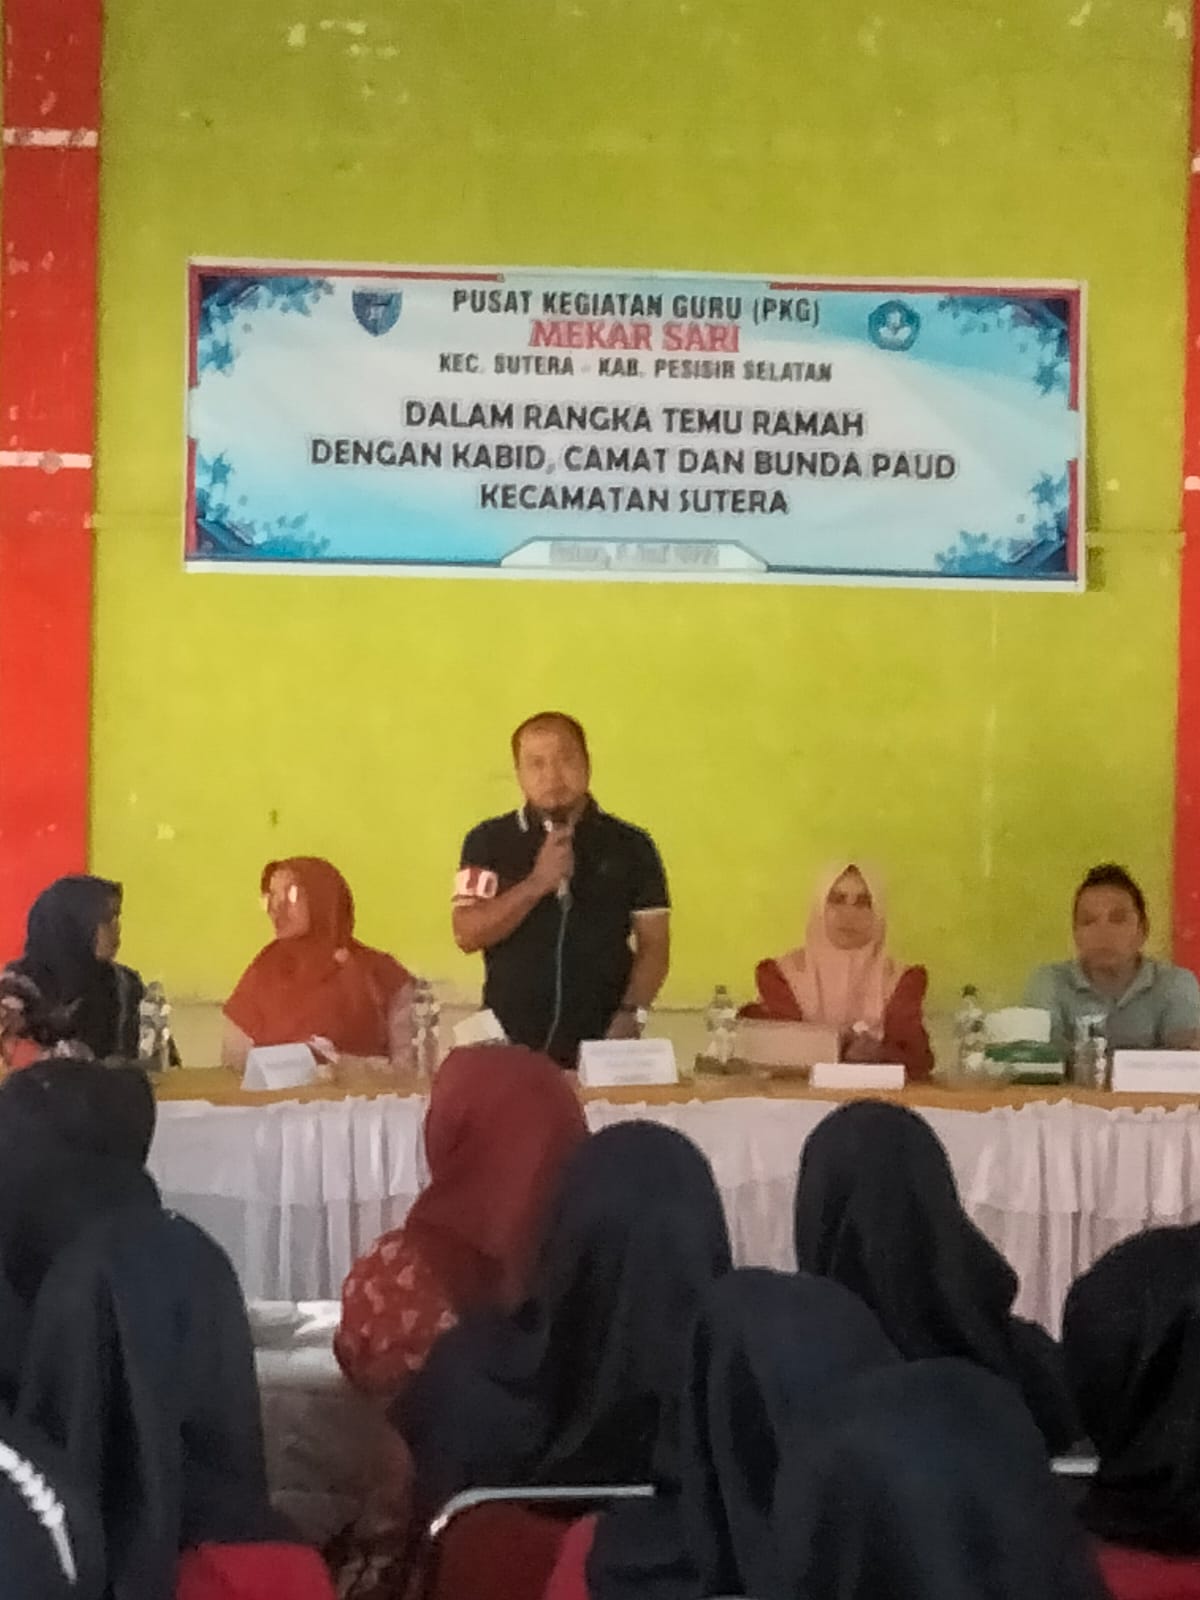 PKG Mekar Sari Kecamatan Sutera adakan Temu Ramah dengan Kabid PAUD Disdikbud Pessel